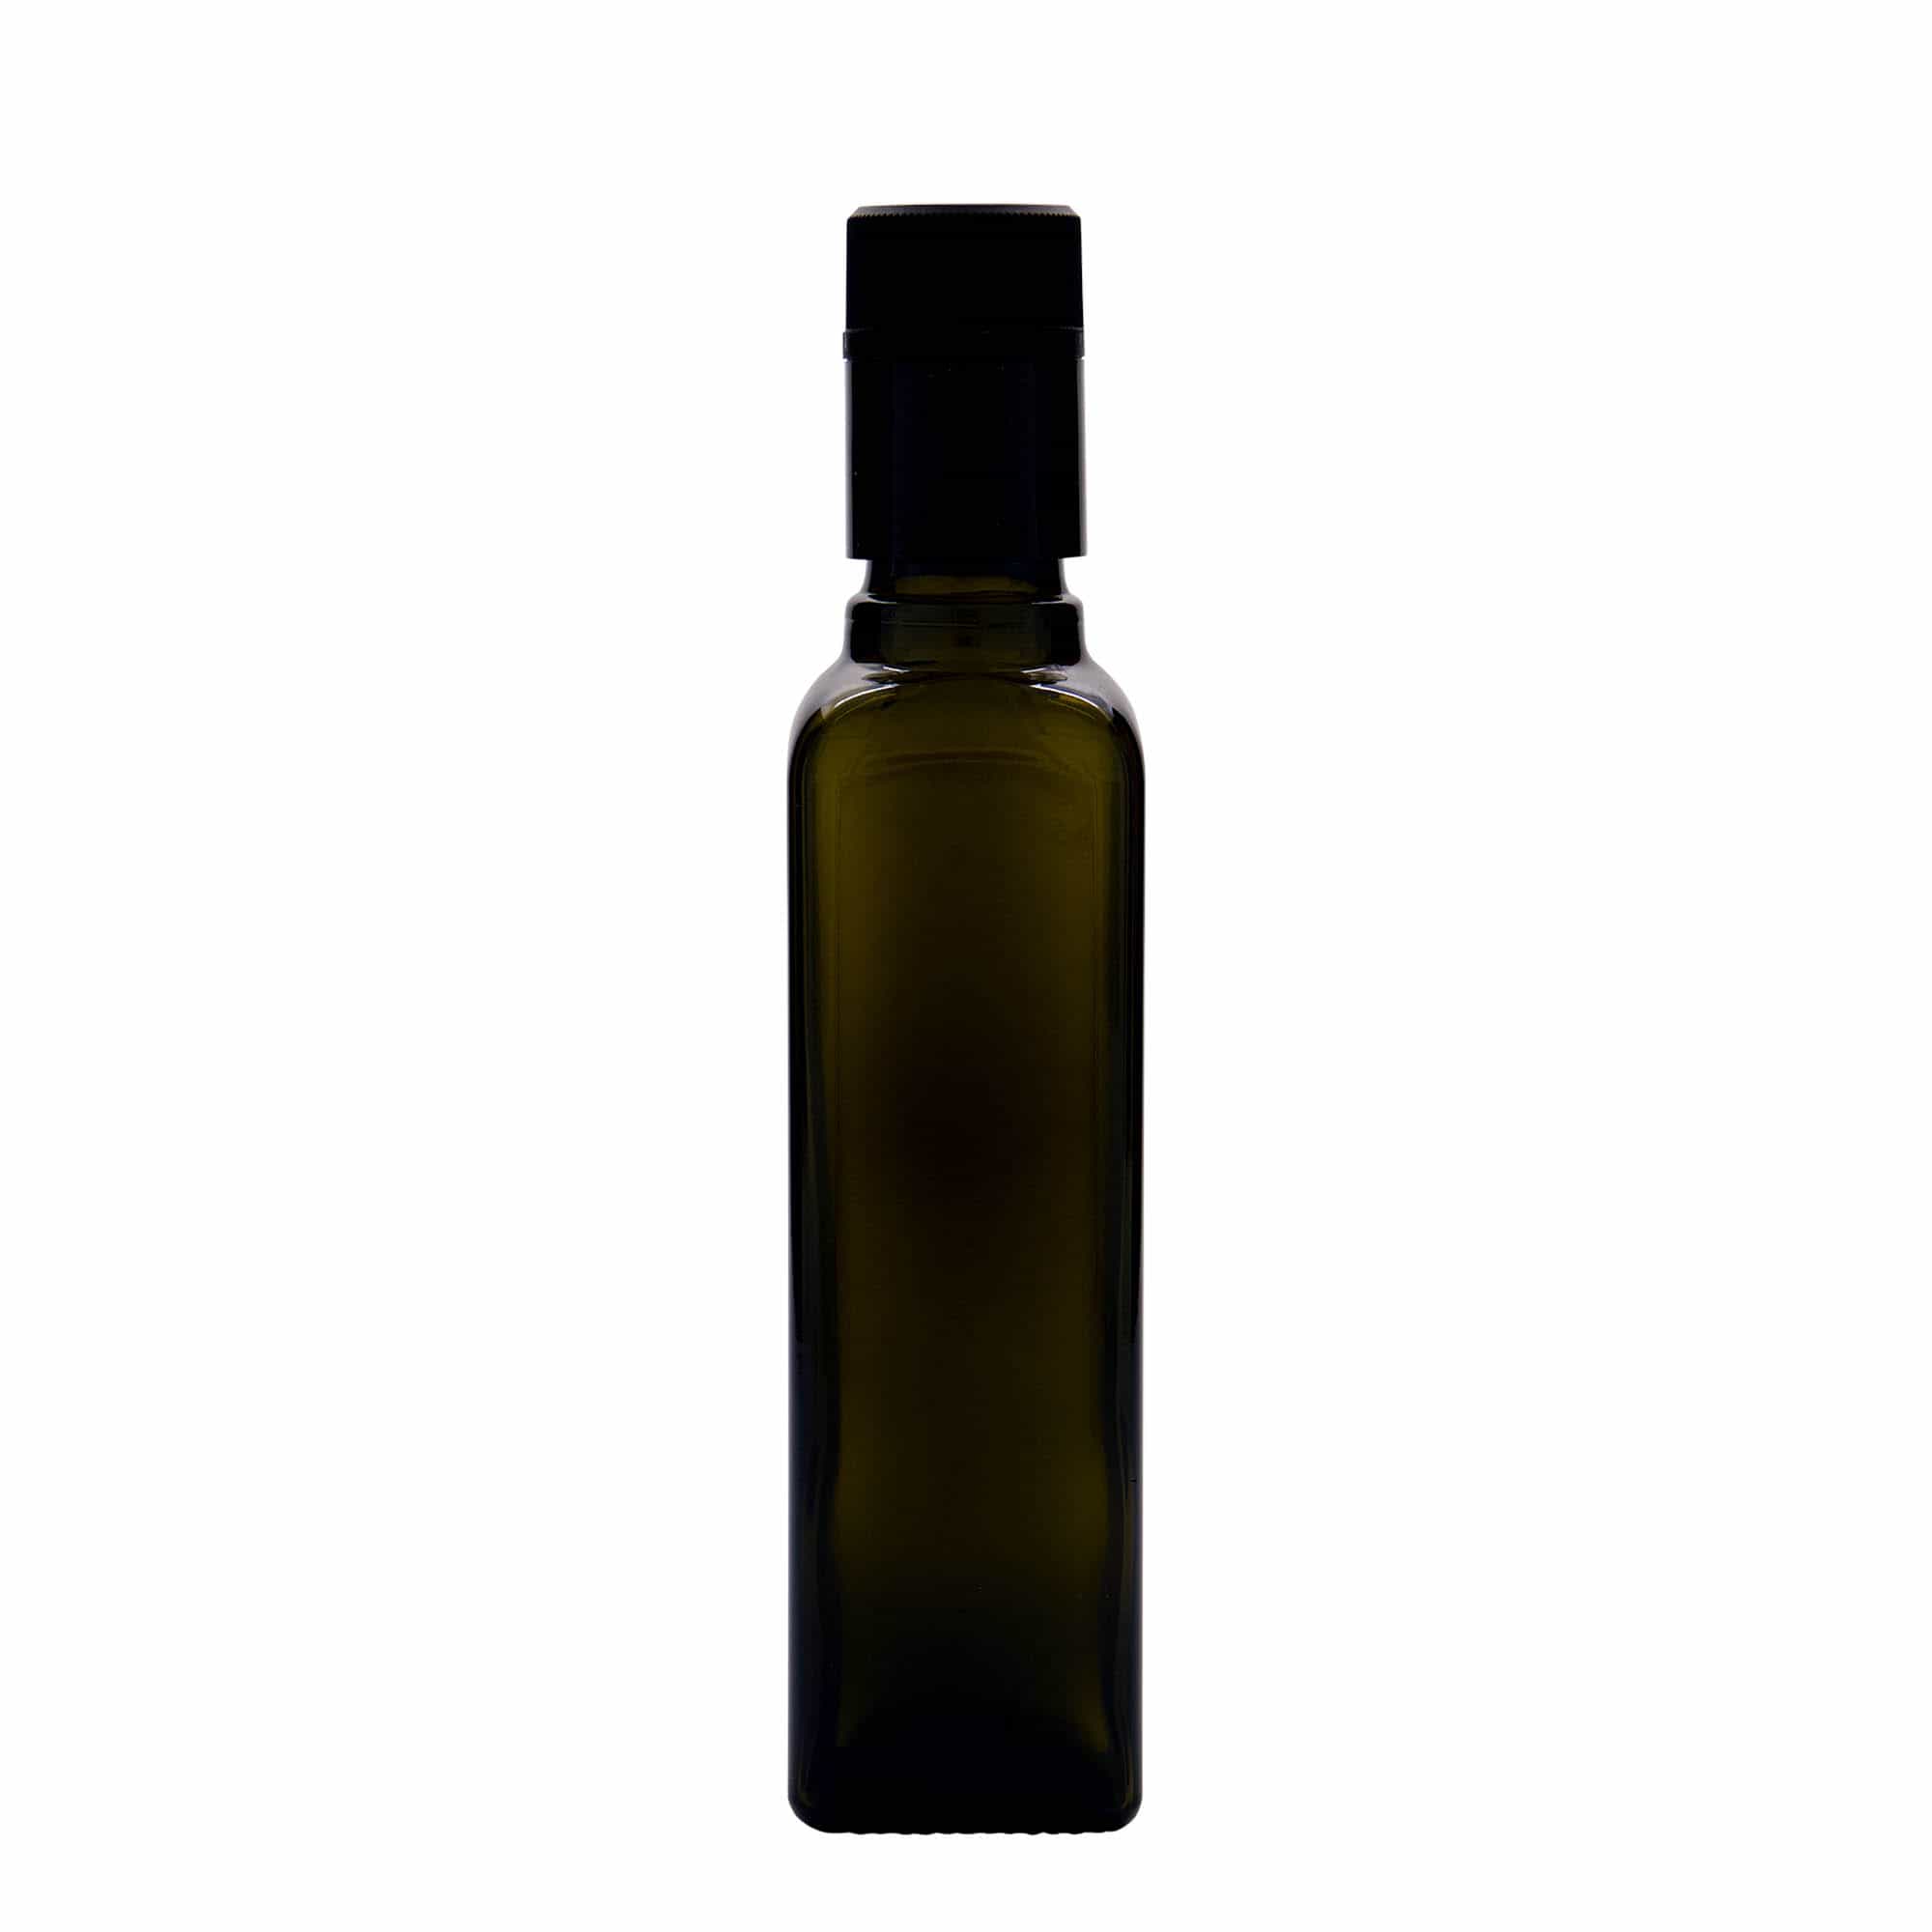 250 ml butelka na ocet/olej 'Quadra', szkło, kwadratowa, kolor zielony antyczny, zamknięcie: DOP